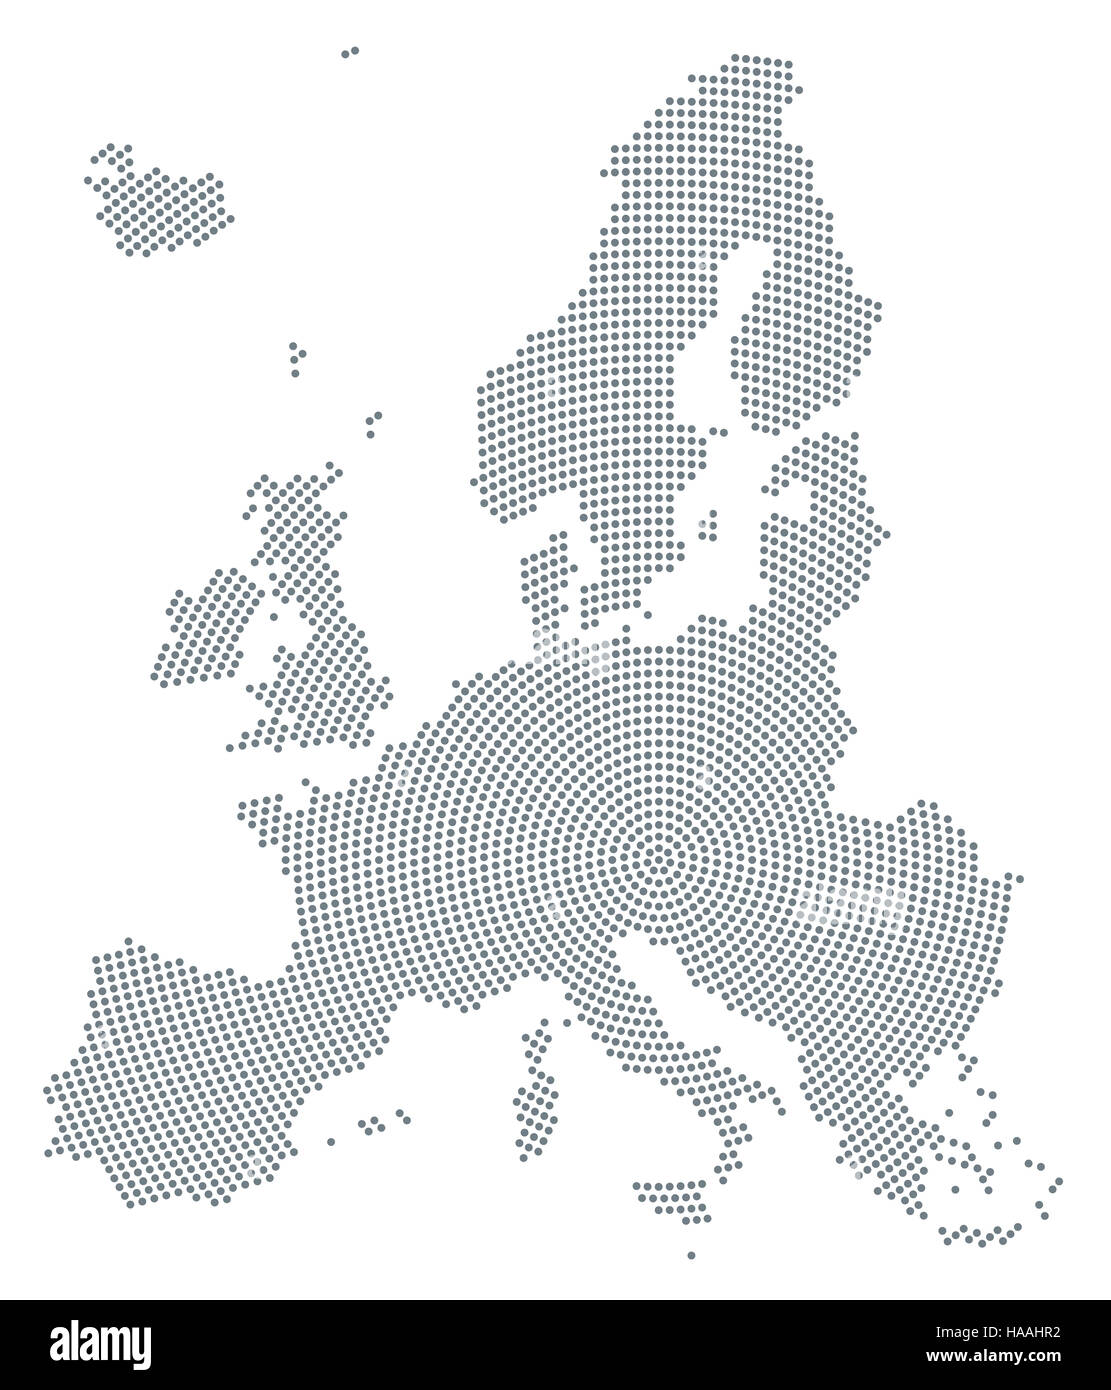 Europa Karte radial Punktmuster. Graue Punkte gehen von der Mitte nach außen und bilden die Silhouette des Gebiets der Europäischen Union. Stockfoto